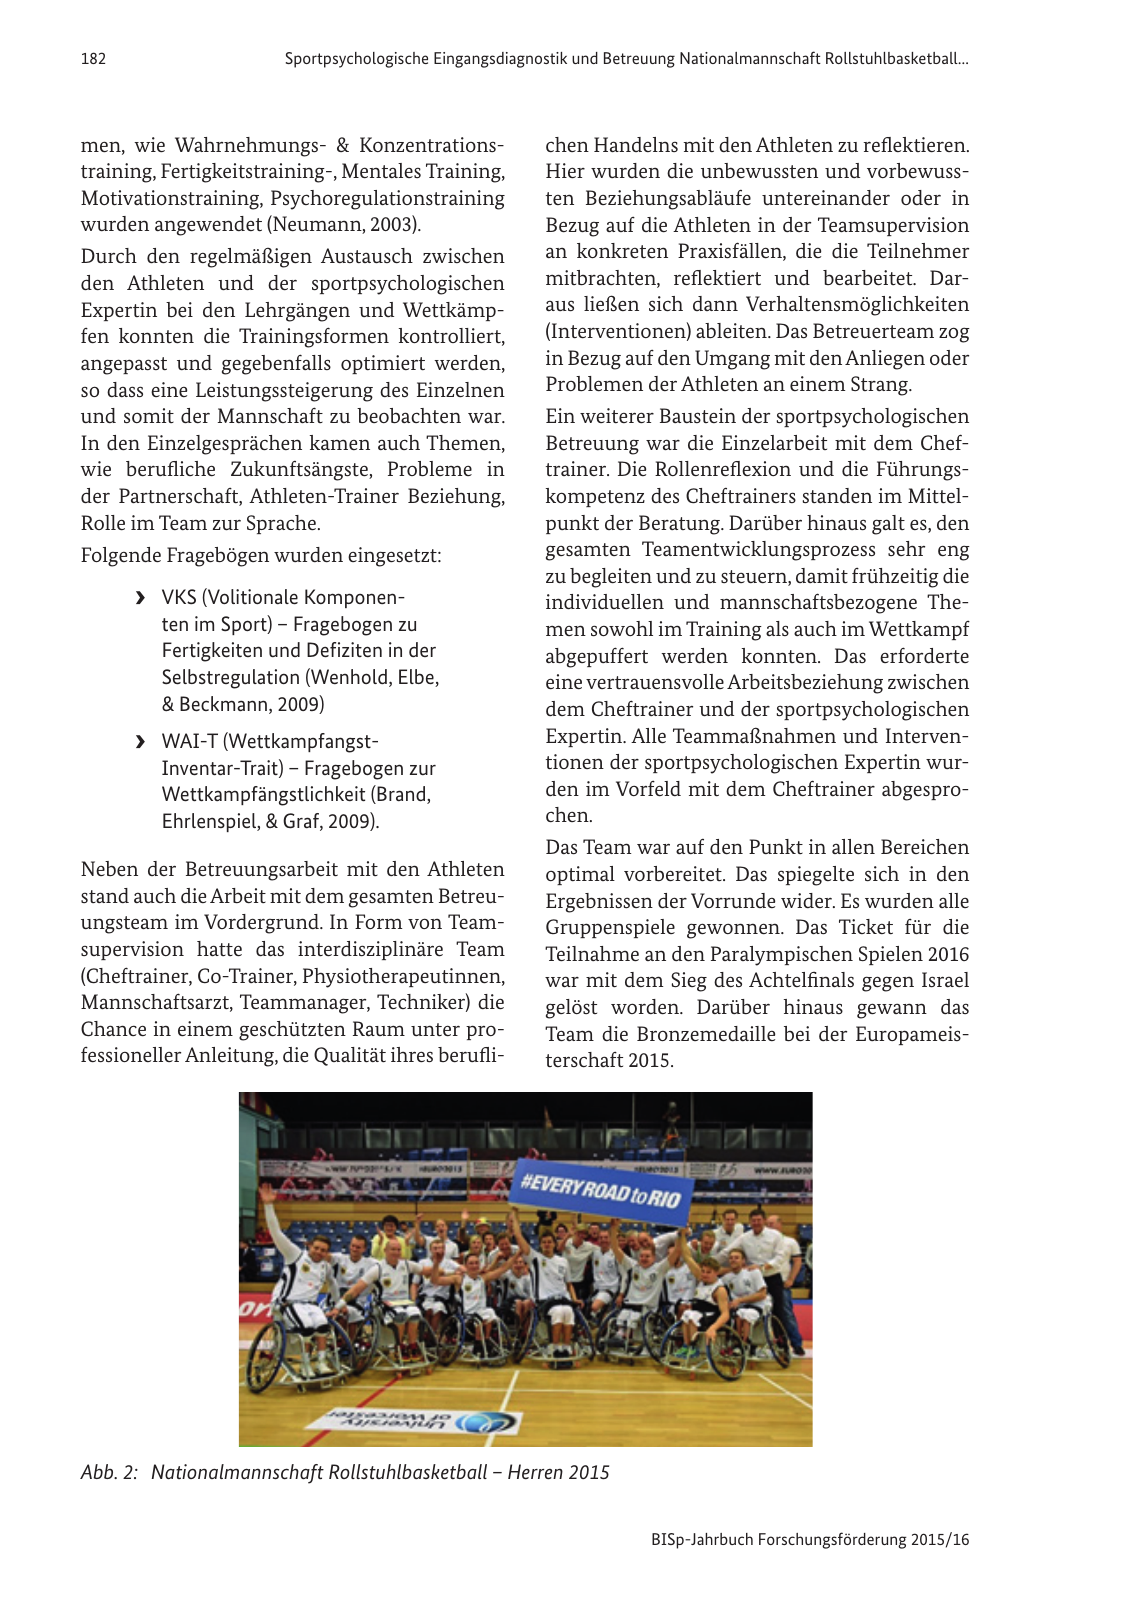 Vorschau BISp-Jahrbuch Forschungsförderung 2015/16 Seite 184